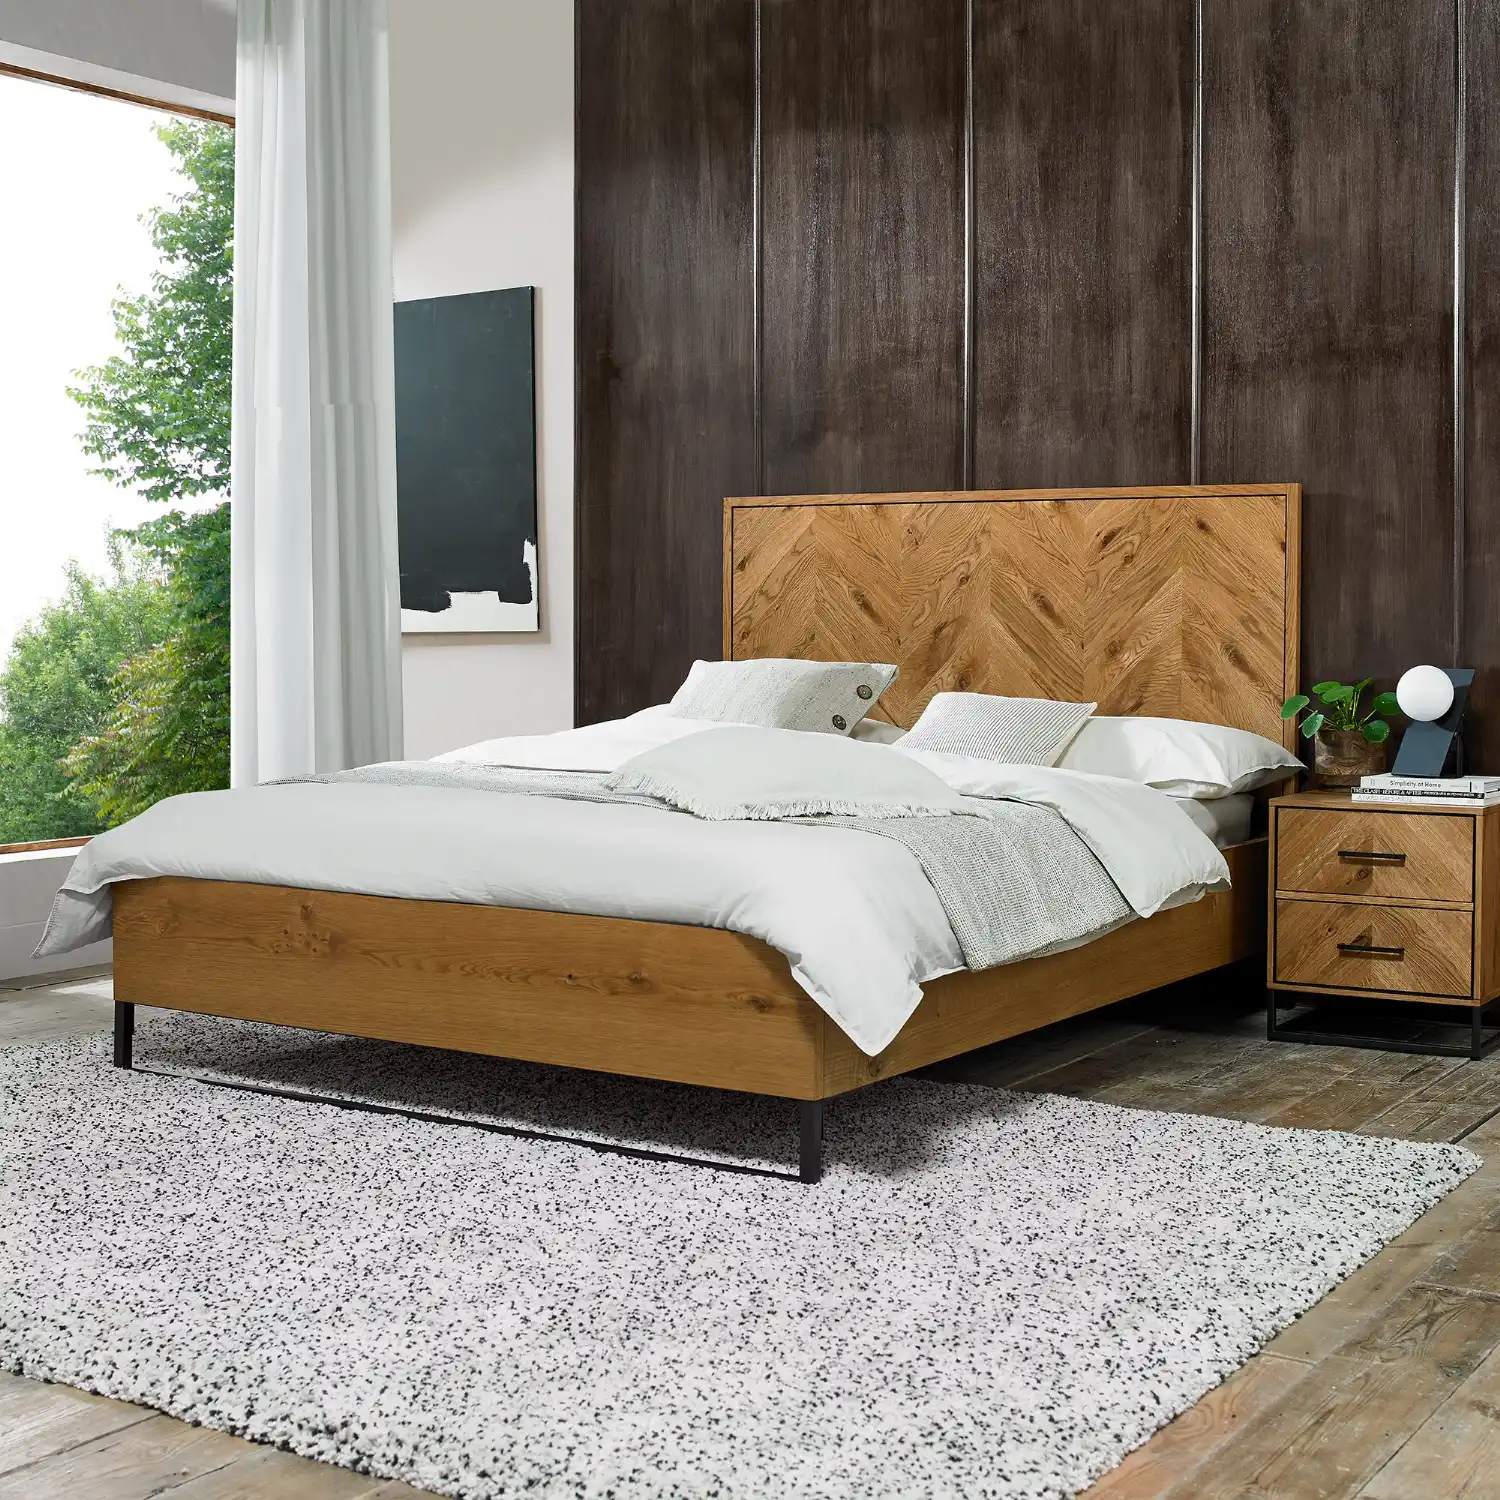 Rustic Oak 5ft King Size Bed Chevron Patterned Headboard